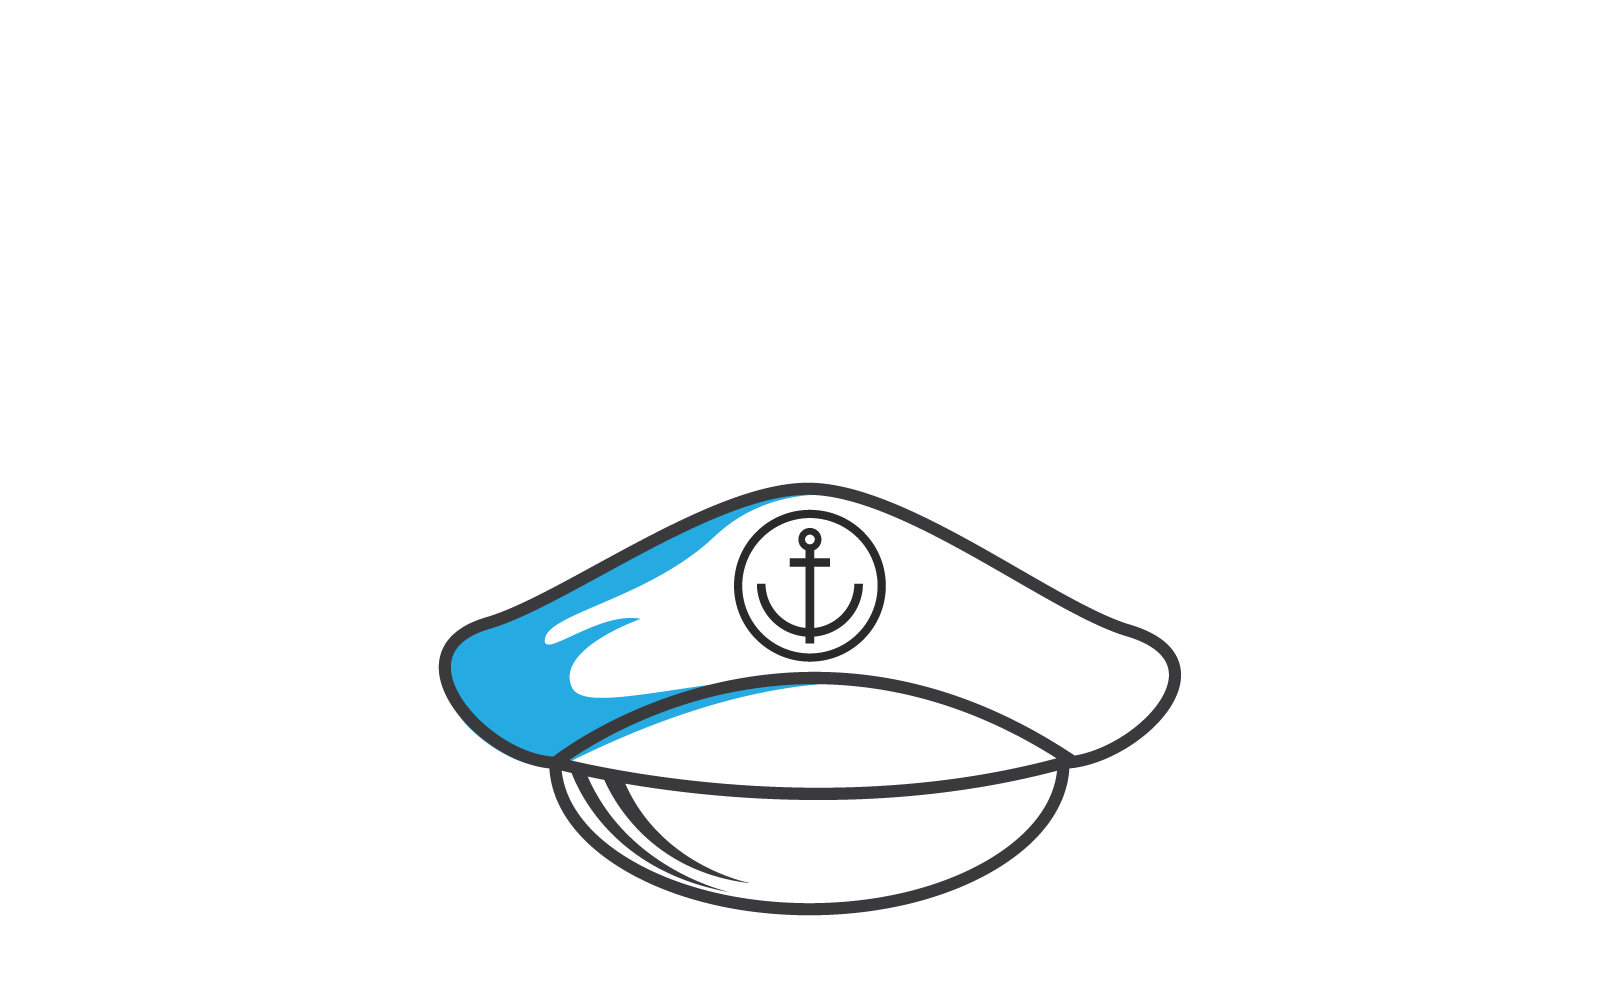 Иллюстрация шаблона плоского дизайна иконки морской шляпы